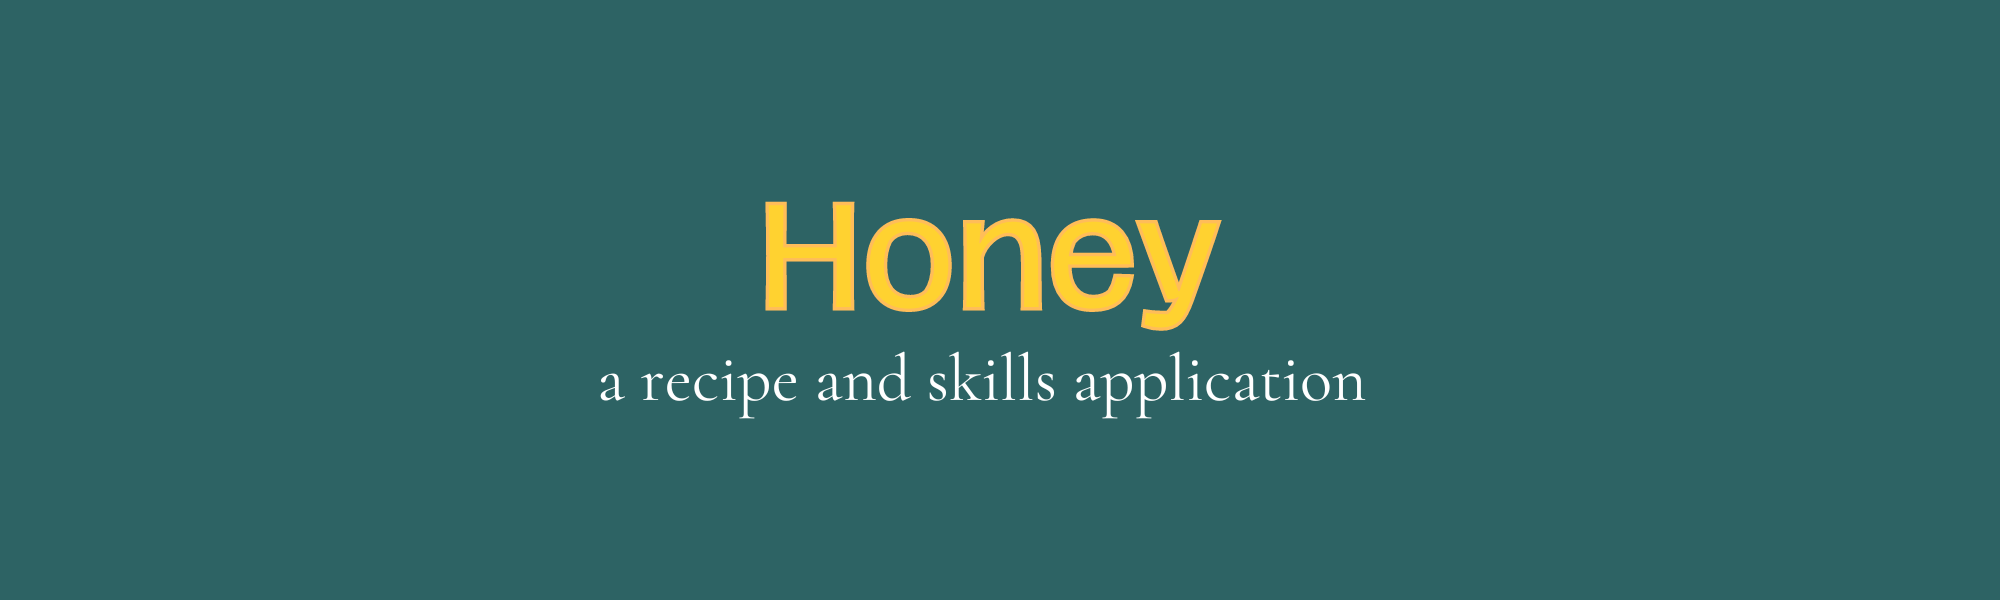 Honey - Mobile App